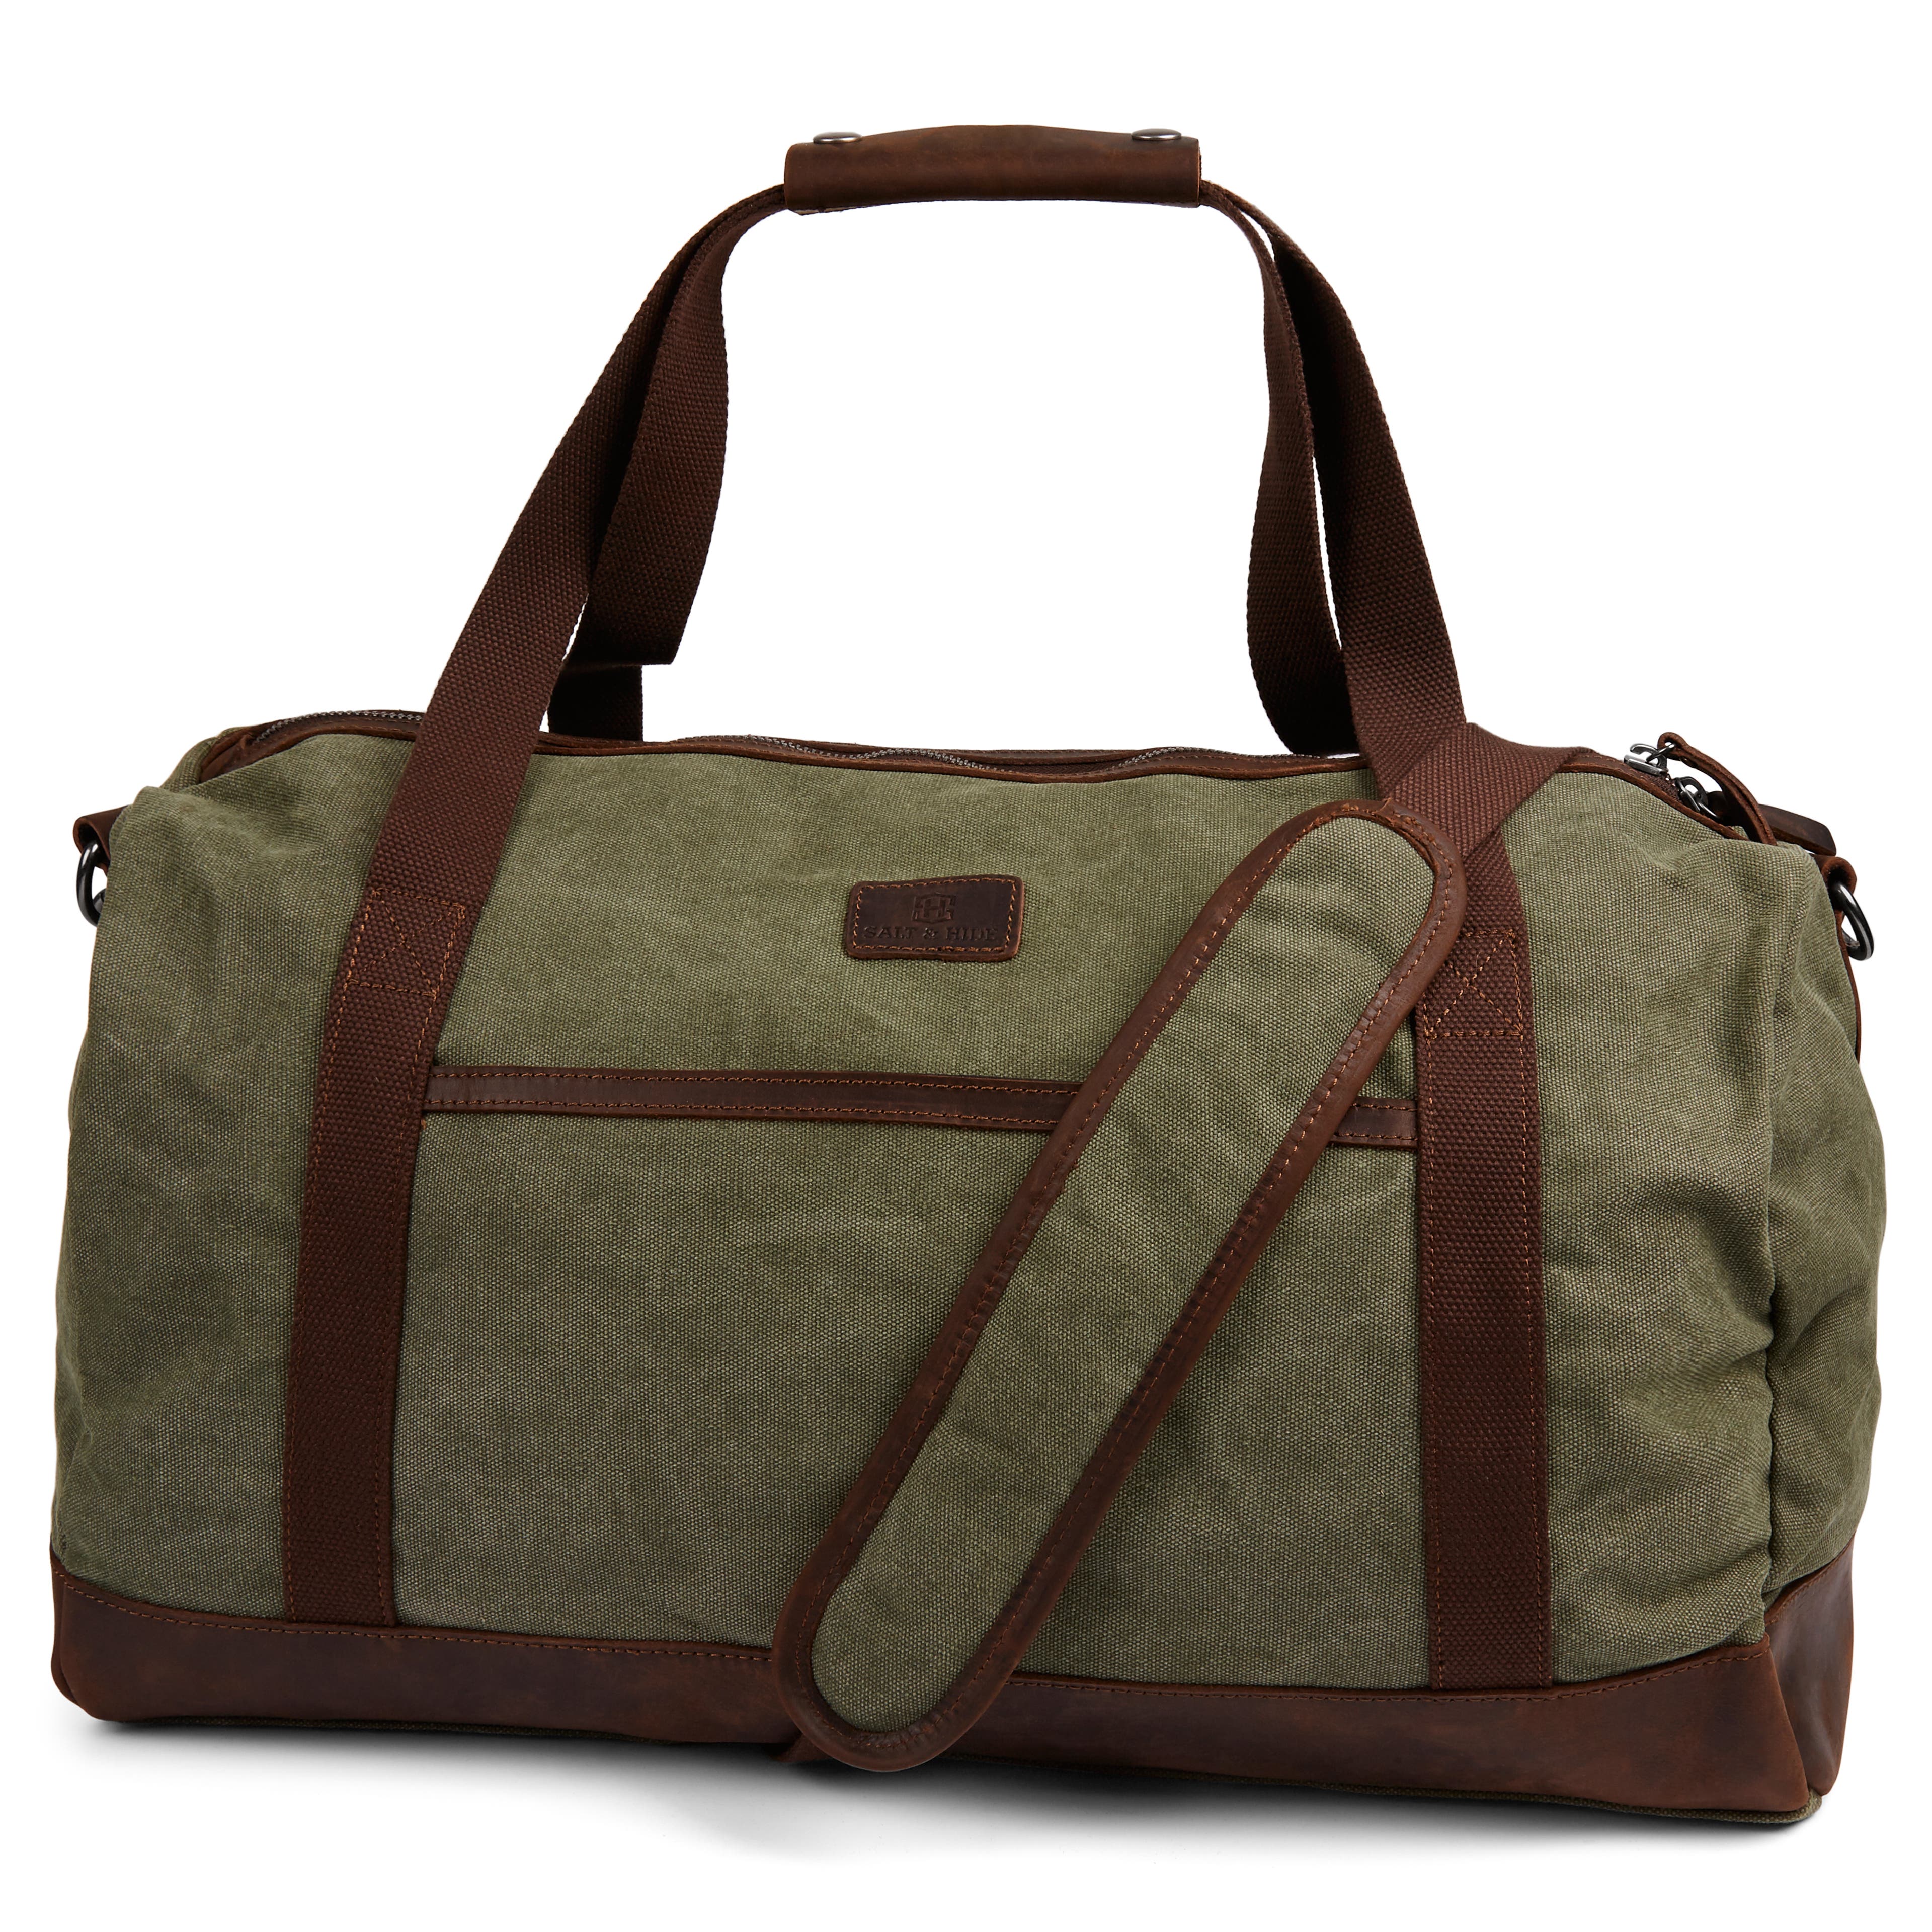 Shem Green & Brown Duffel Bag